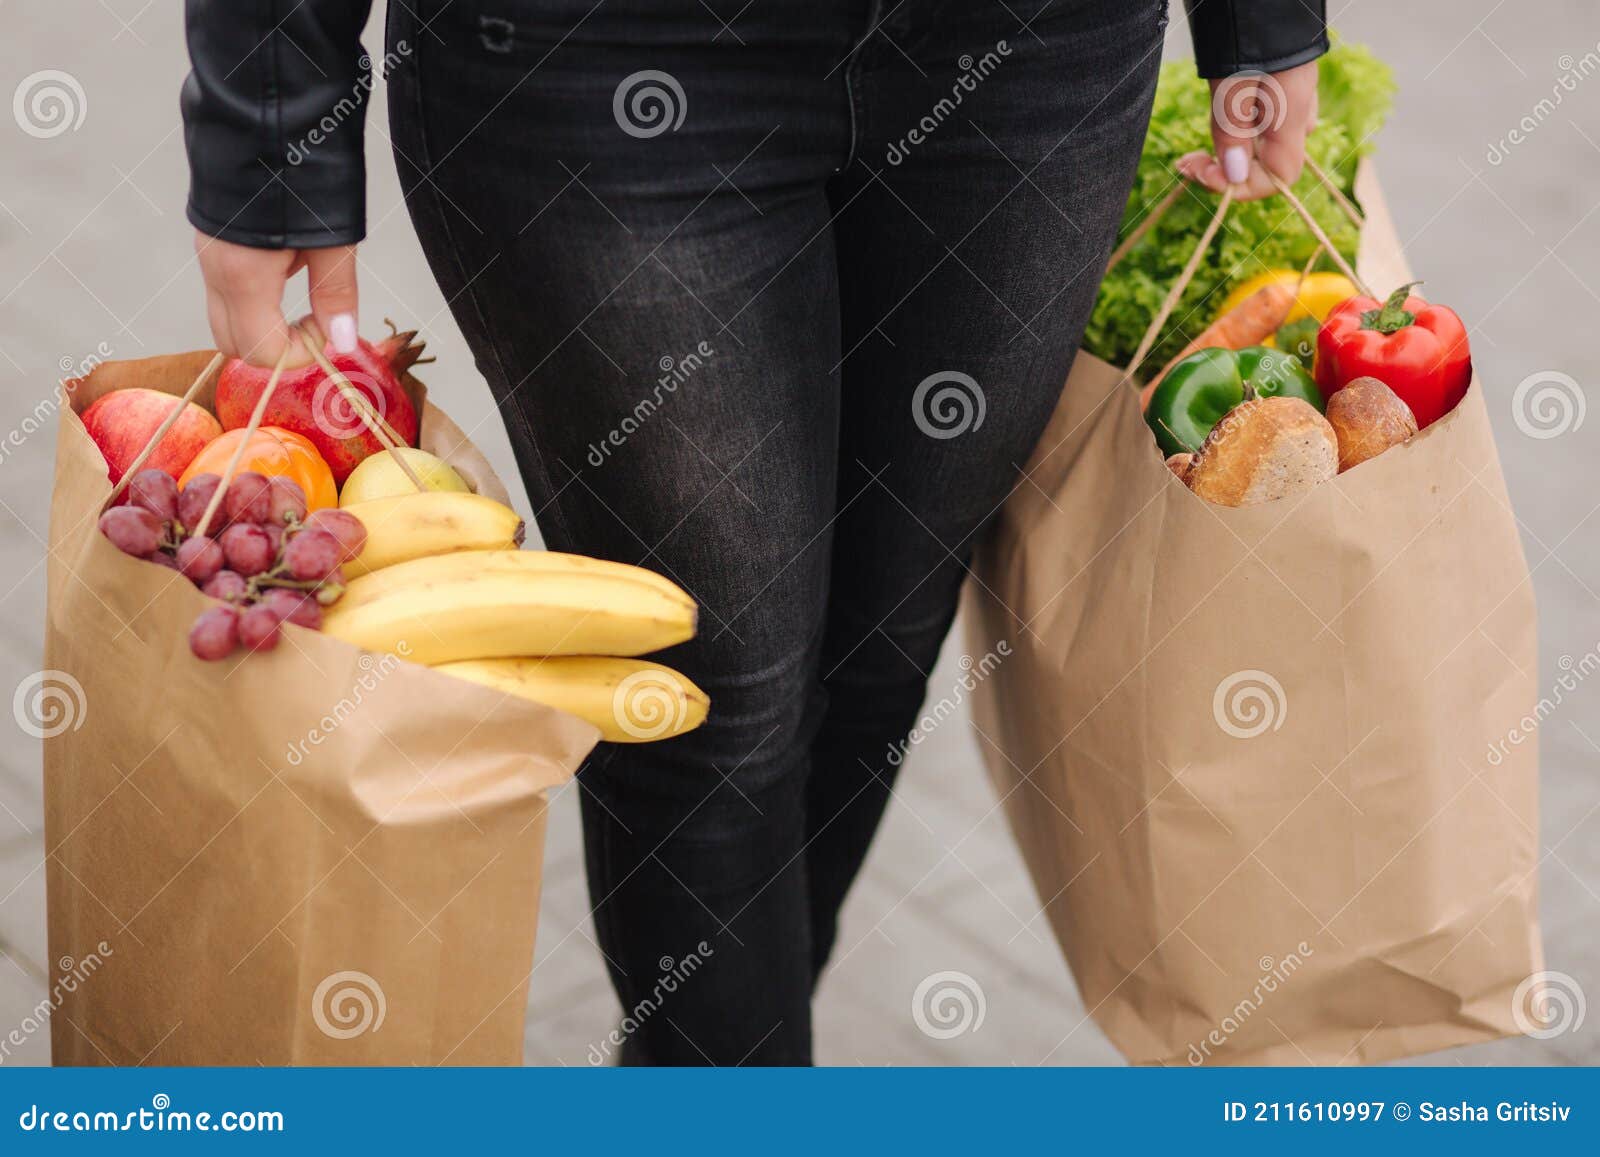 Comestibles De Un Supermercado En Paquete De Ecología Artesanal. Entrega De Alimentos Durante La Cuarentena. Bolsas Ecológicas Imagen de archivo - de adulto, coche: 211610997